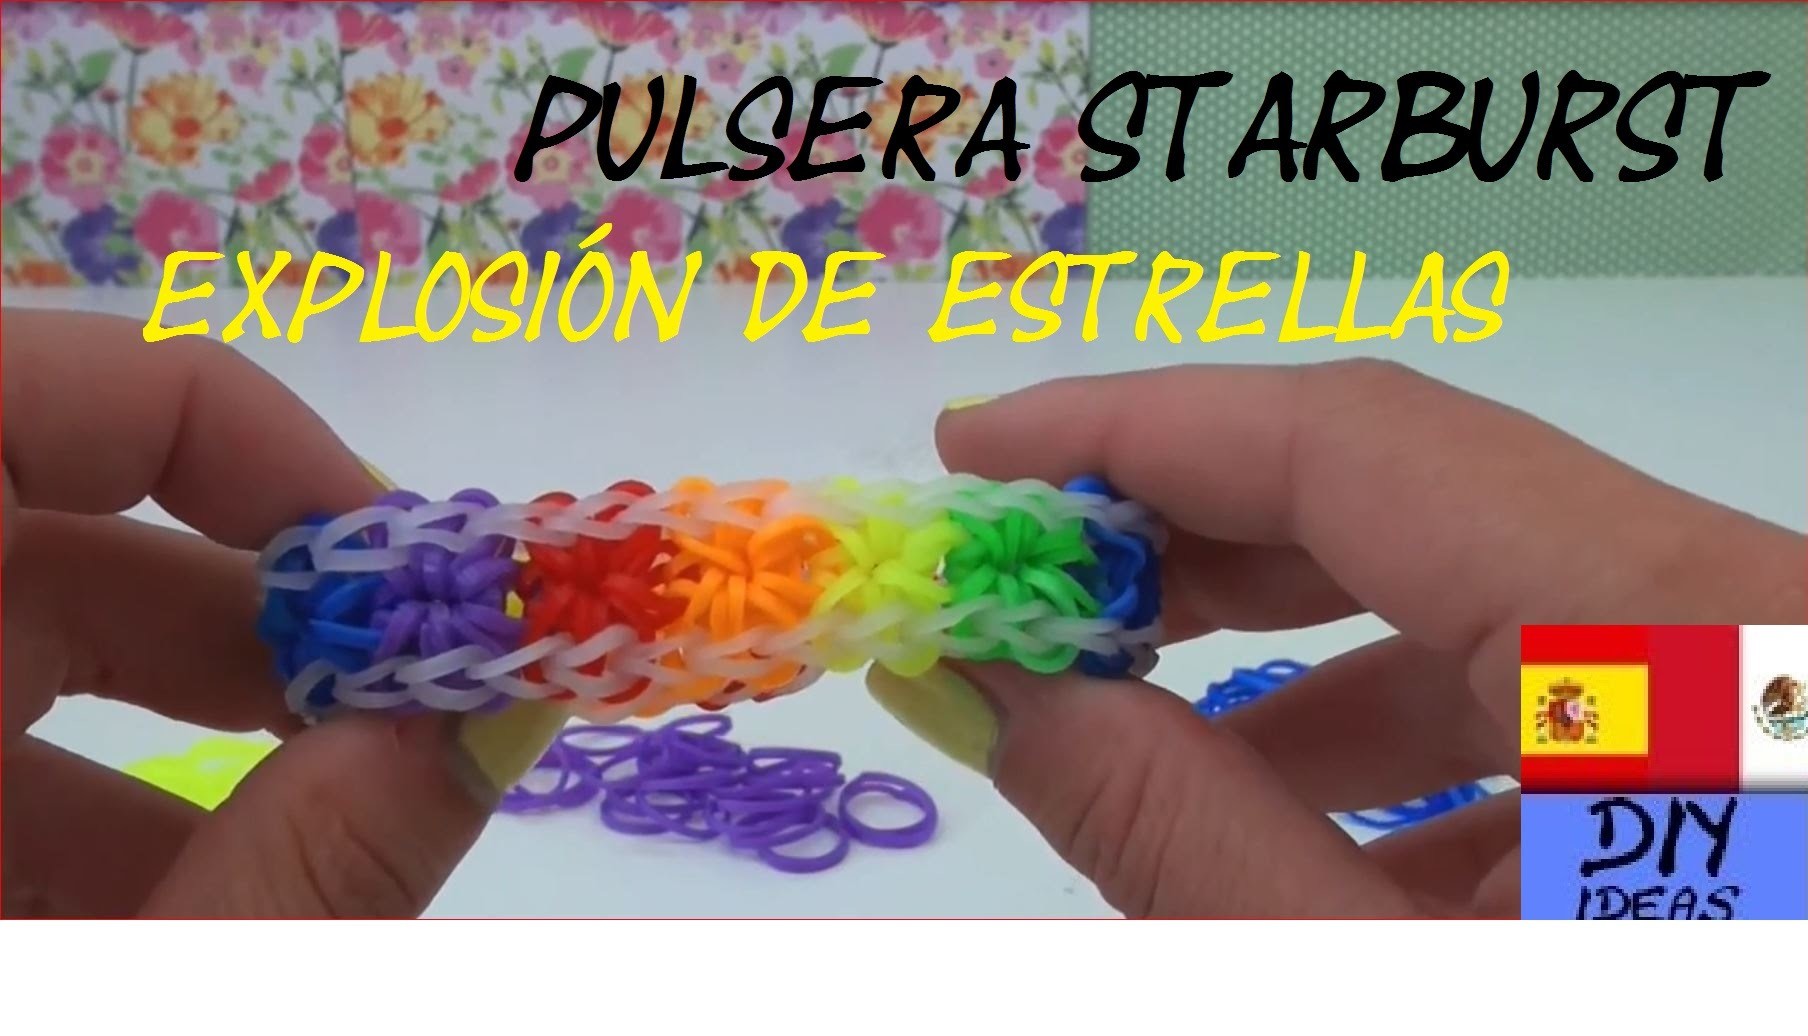 PULSERA DE GOMITA EXPLOSIÓN DE ESTRELLAS - STARBURST - SIN TELAR - TUTORIAL EN ESPAÑOL - DIY